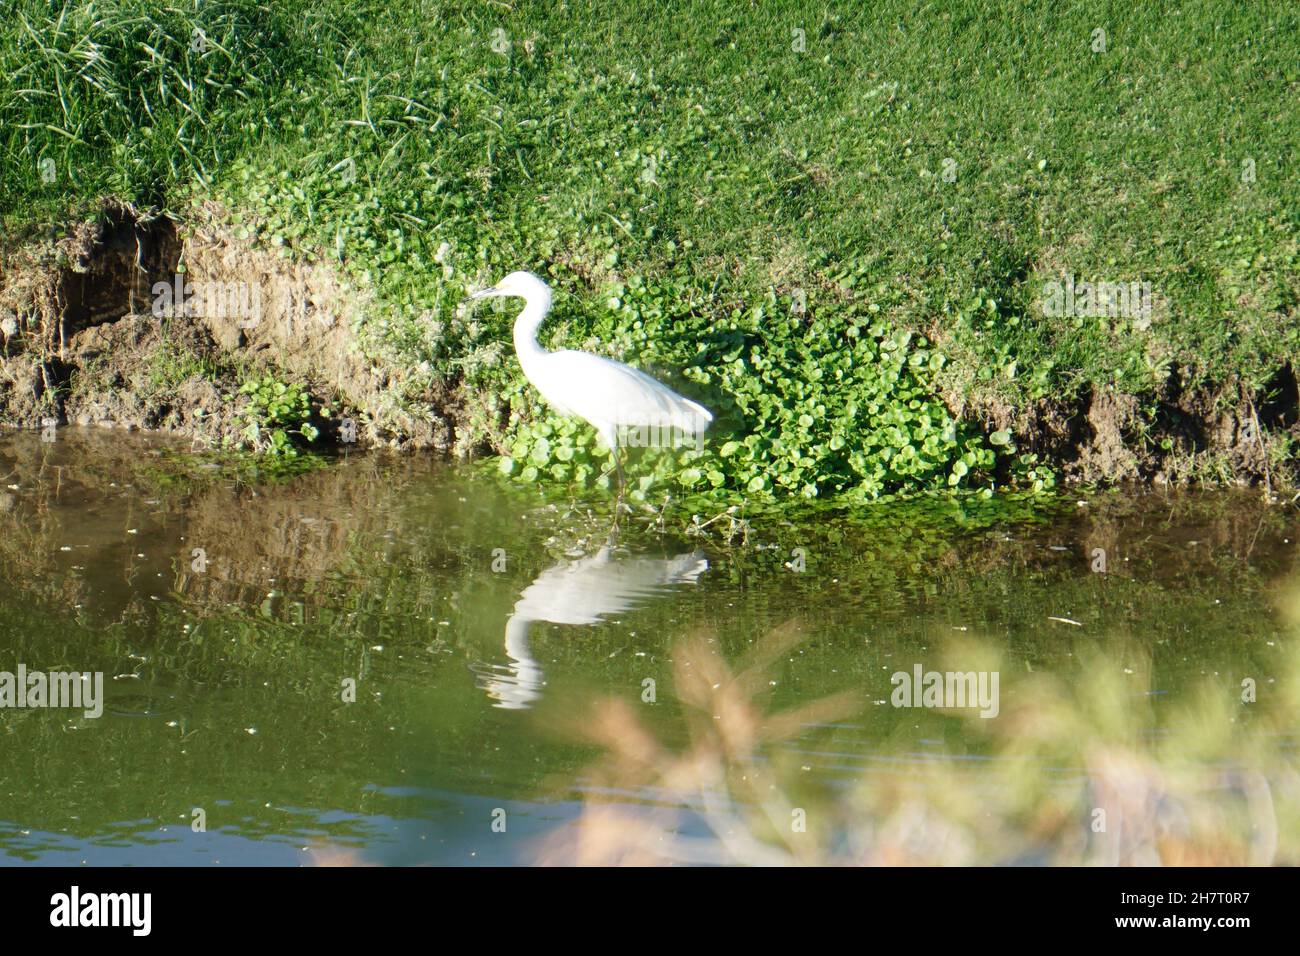 White Egret near a pond Stock Photo